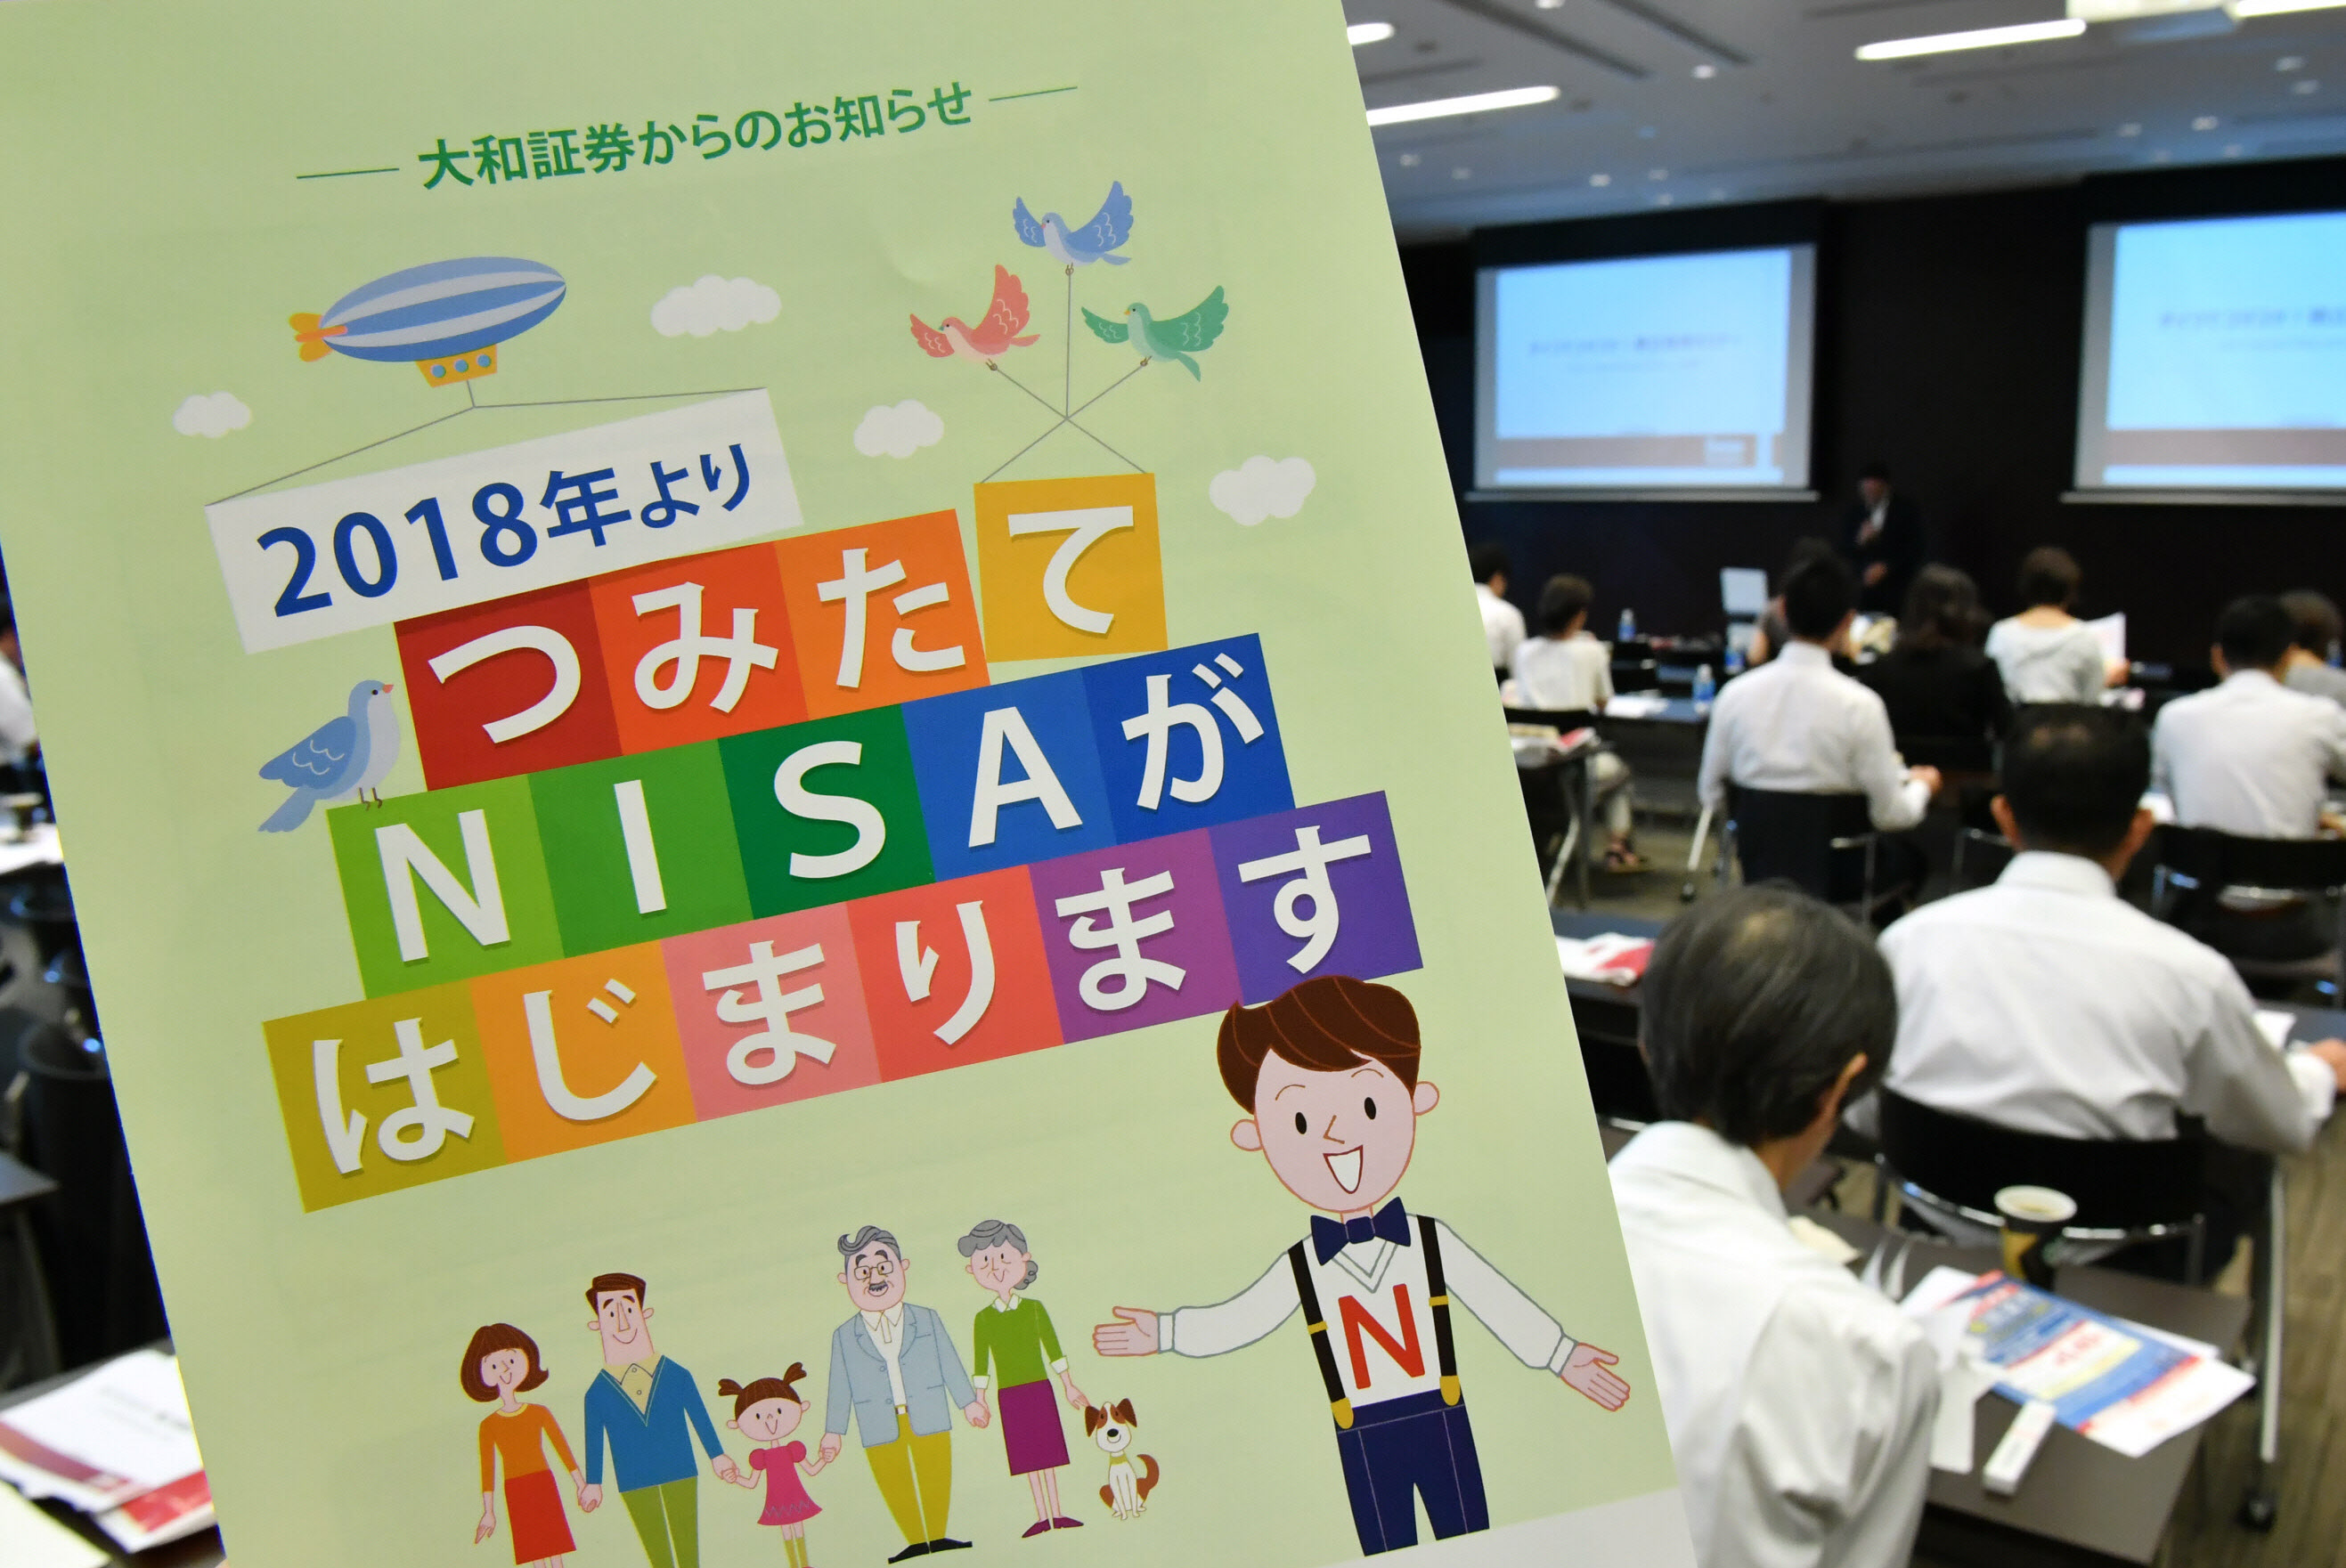 「つみたてNISA」をテーマにした投資セミナーが相次いで開催されている（東京都千代田区）